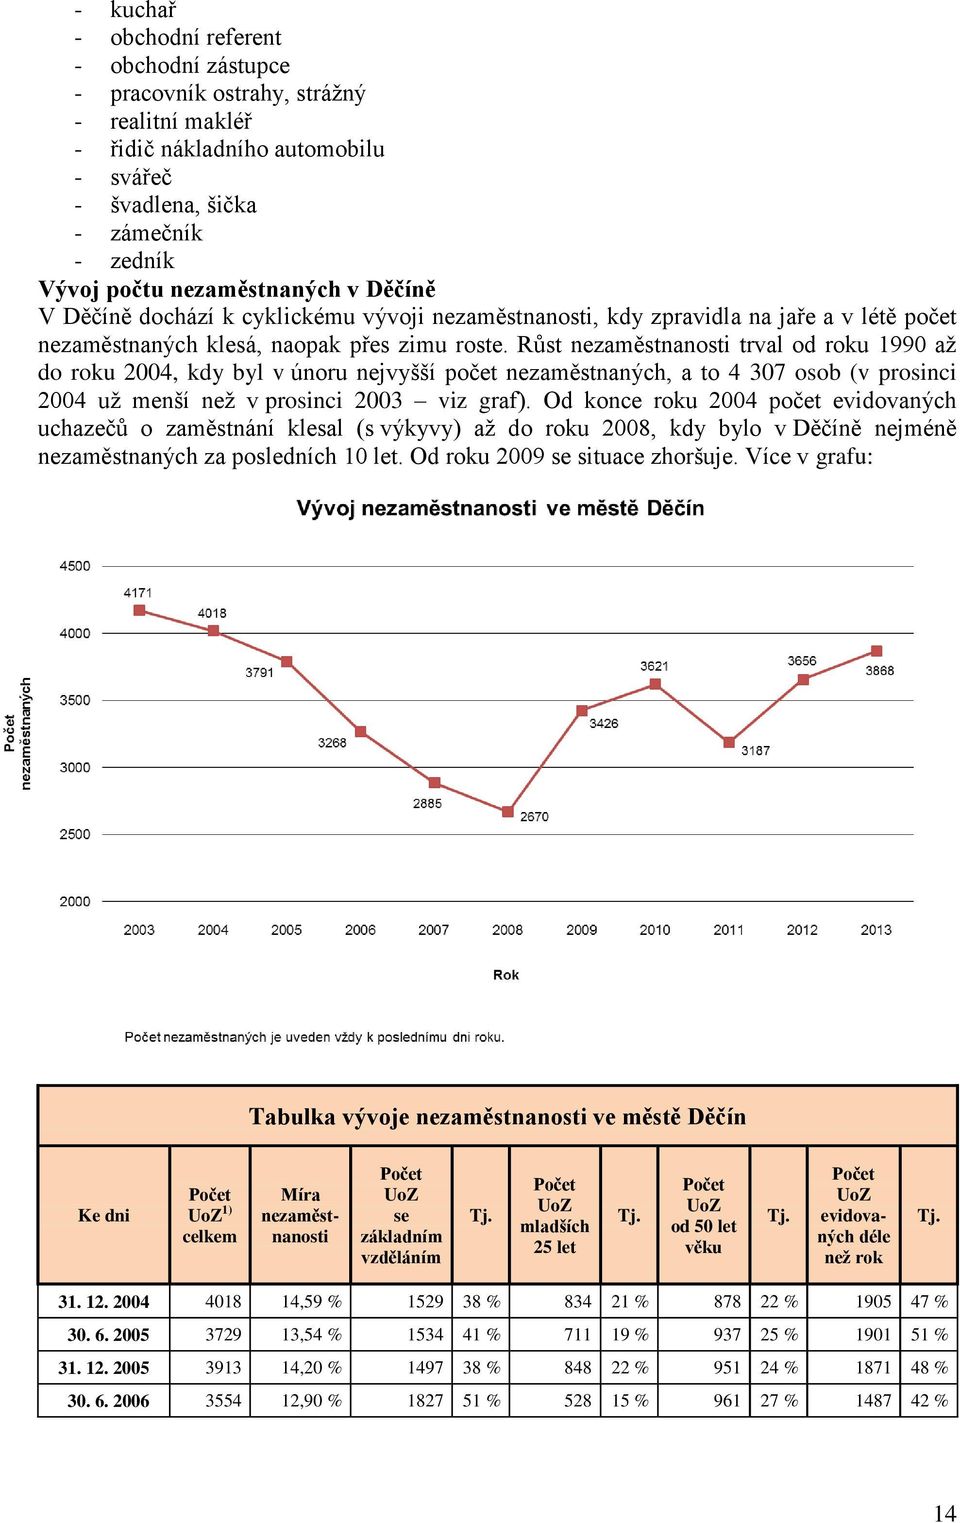 Růst nezaměstnanosti trval od roku 1990 až do roku 2004, kdy byl v únoru nejvyšší počet nezaměstnaných, a to 4 307 osob (v prosinci 2004 už menší než v prosinci 2003 viz graf).